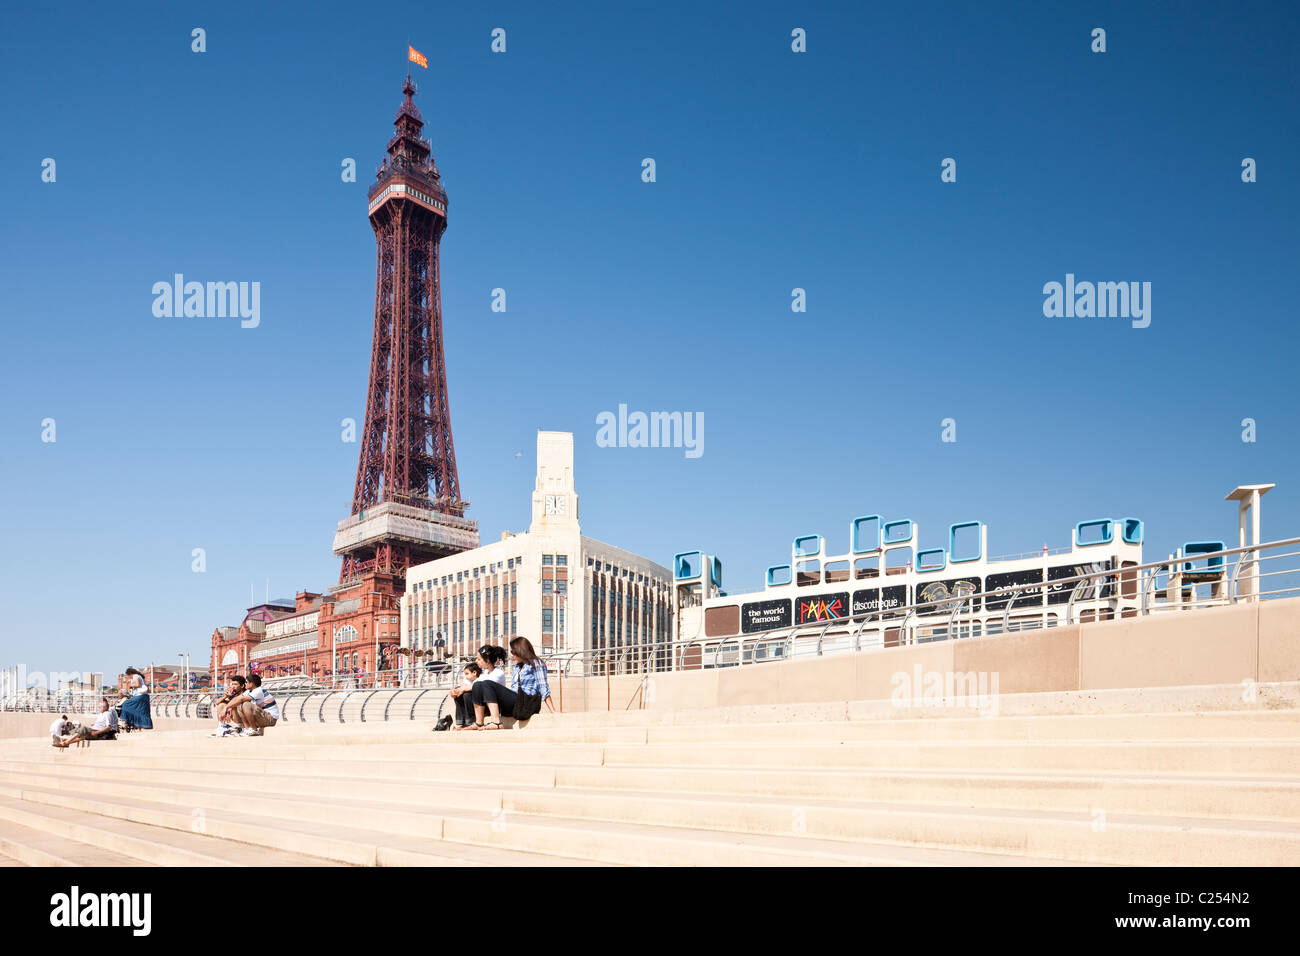 La tour de Blackpool sur les étapes à la plage de Blackpool, dans le Lancashire, Angleterre, RU Banque D'Images